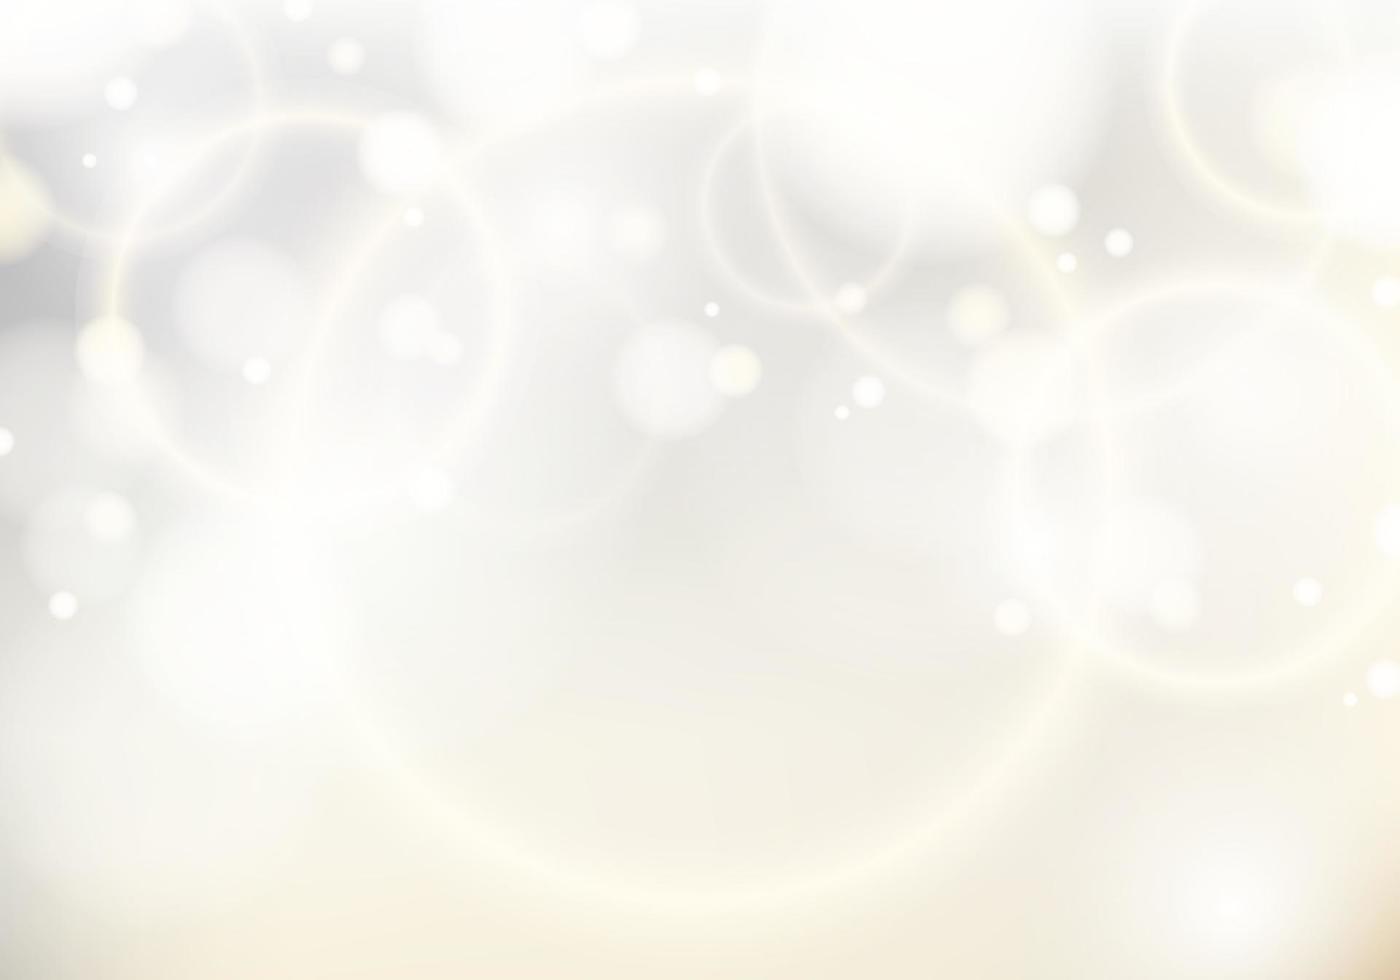 abstracte elegante wazig witte achtergrond met gouden licht bokeh. feestelijke onscherpe witte lichten luxe stijl vector